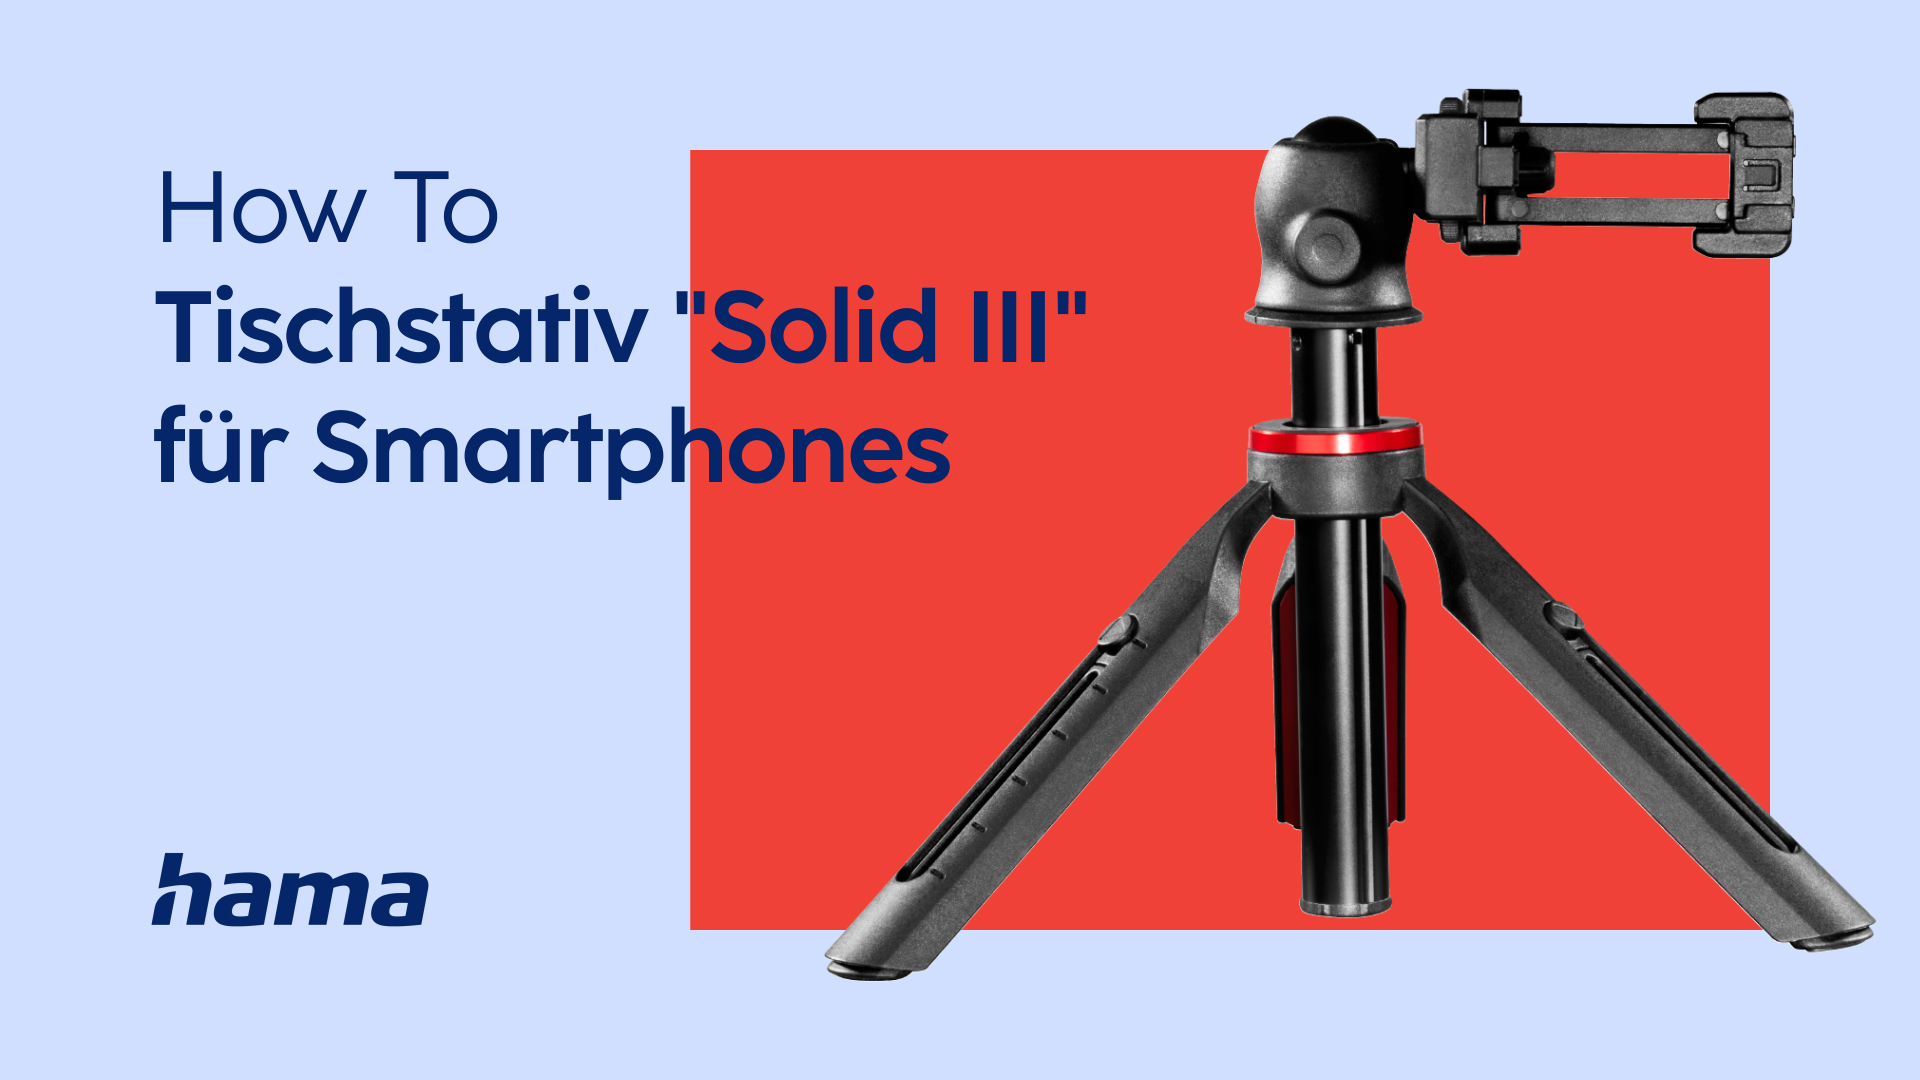 Hama Tischstativ "Solid III" für Smartphones